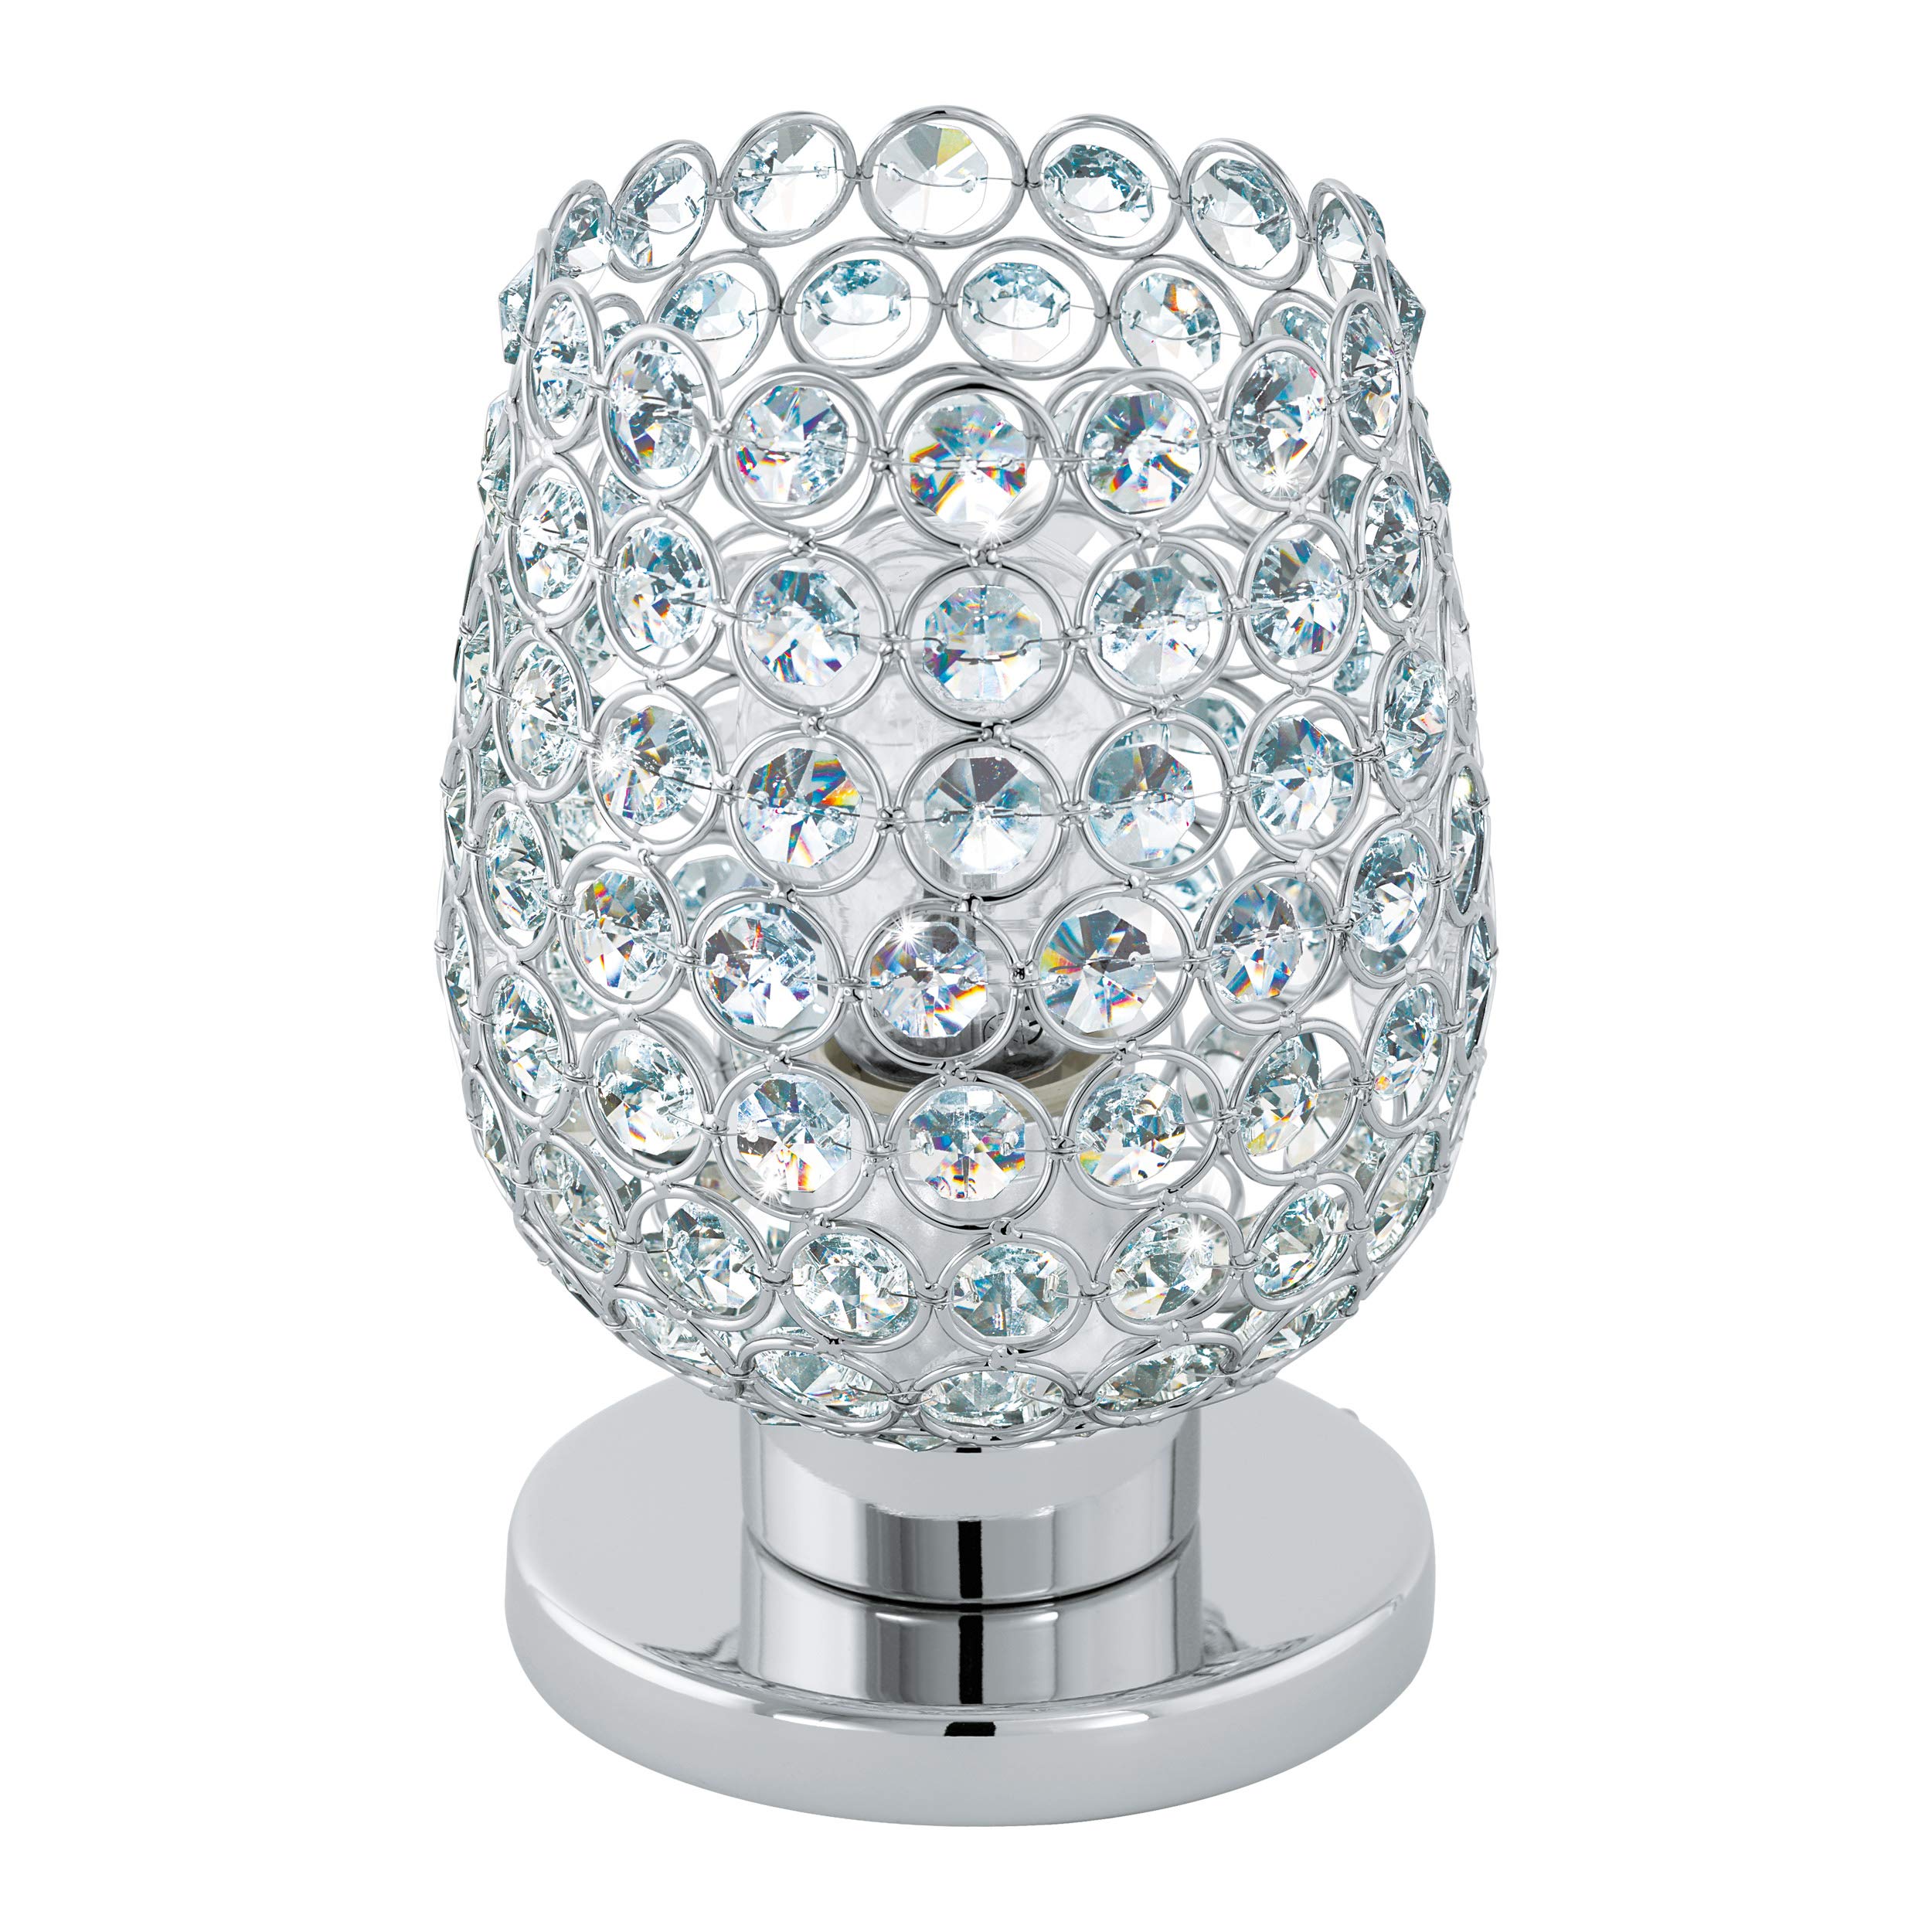 EGLO Tischlampe Bonares 1, 1 flammige Tischleuchte, Elegant, Nachttischlampe aus Stahl und Kristall, Wohnzimmerlampe in Chrom, Klar, Lampe mit Schalter, E27 Fassung